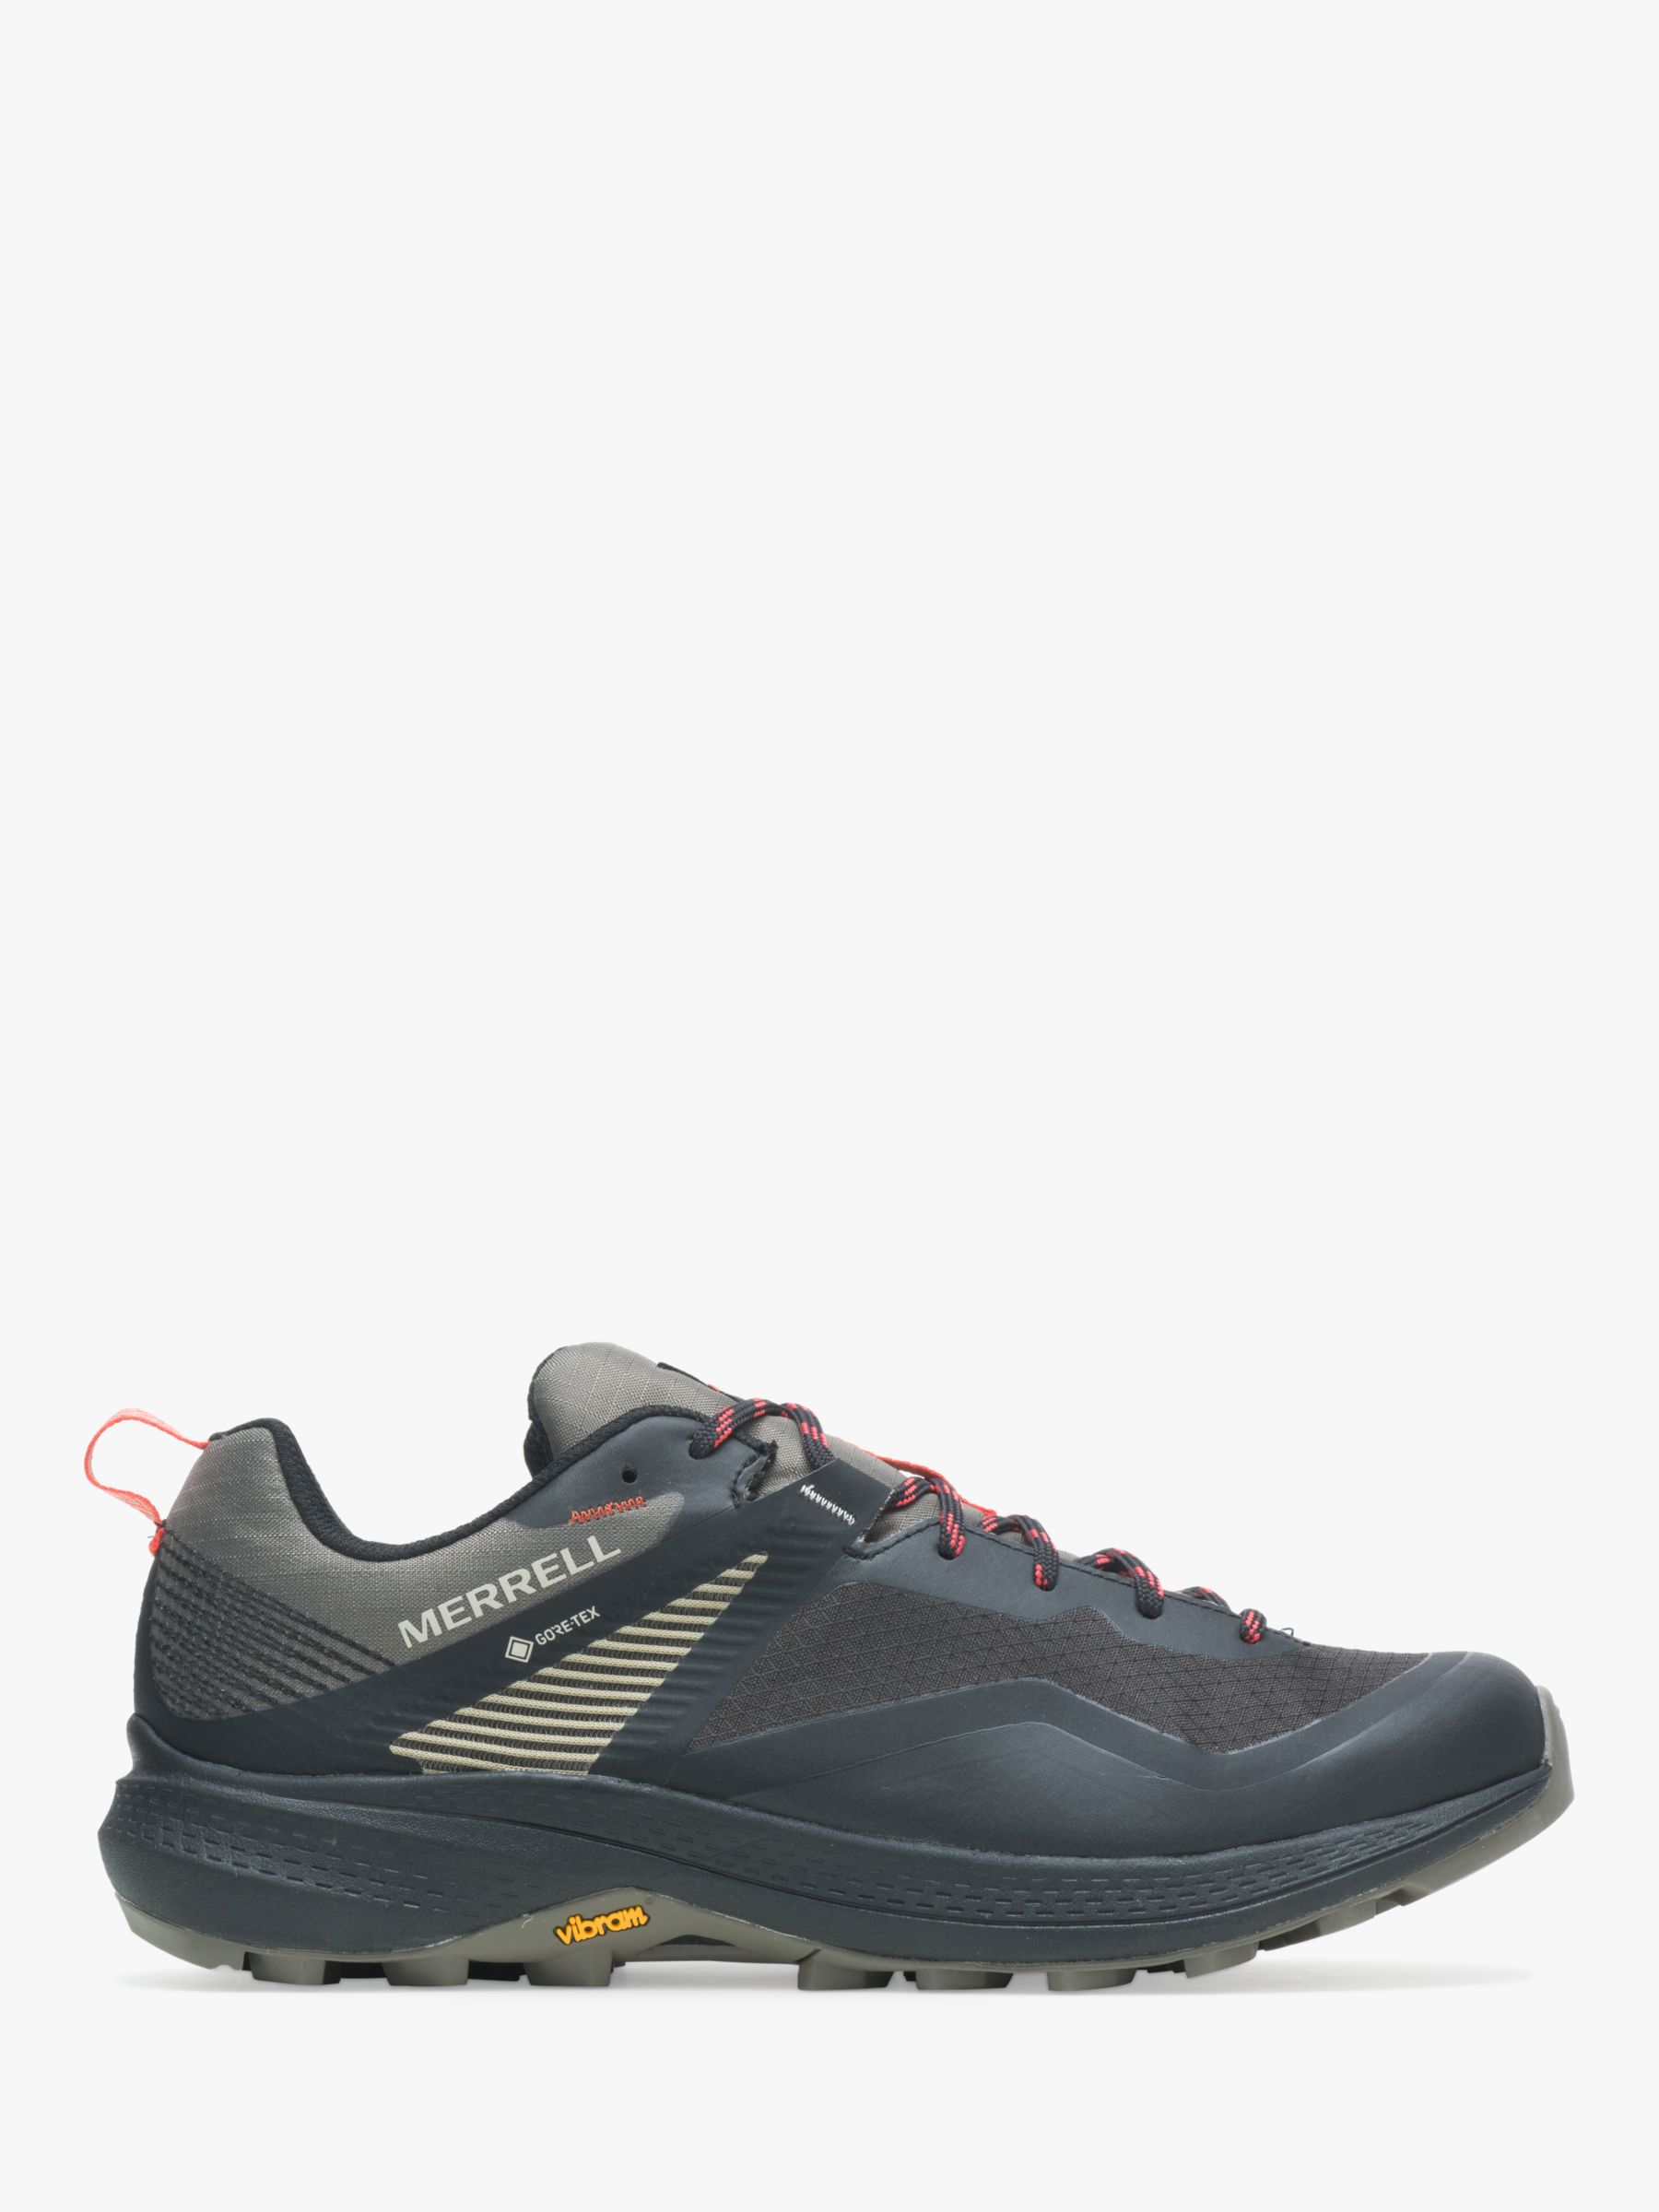 Merrell MQM 3 Men's Waterproof Gore-Tex Walking Shoes, Grey, 11